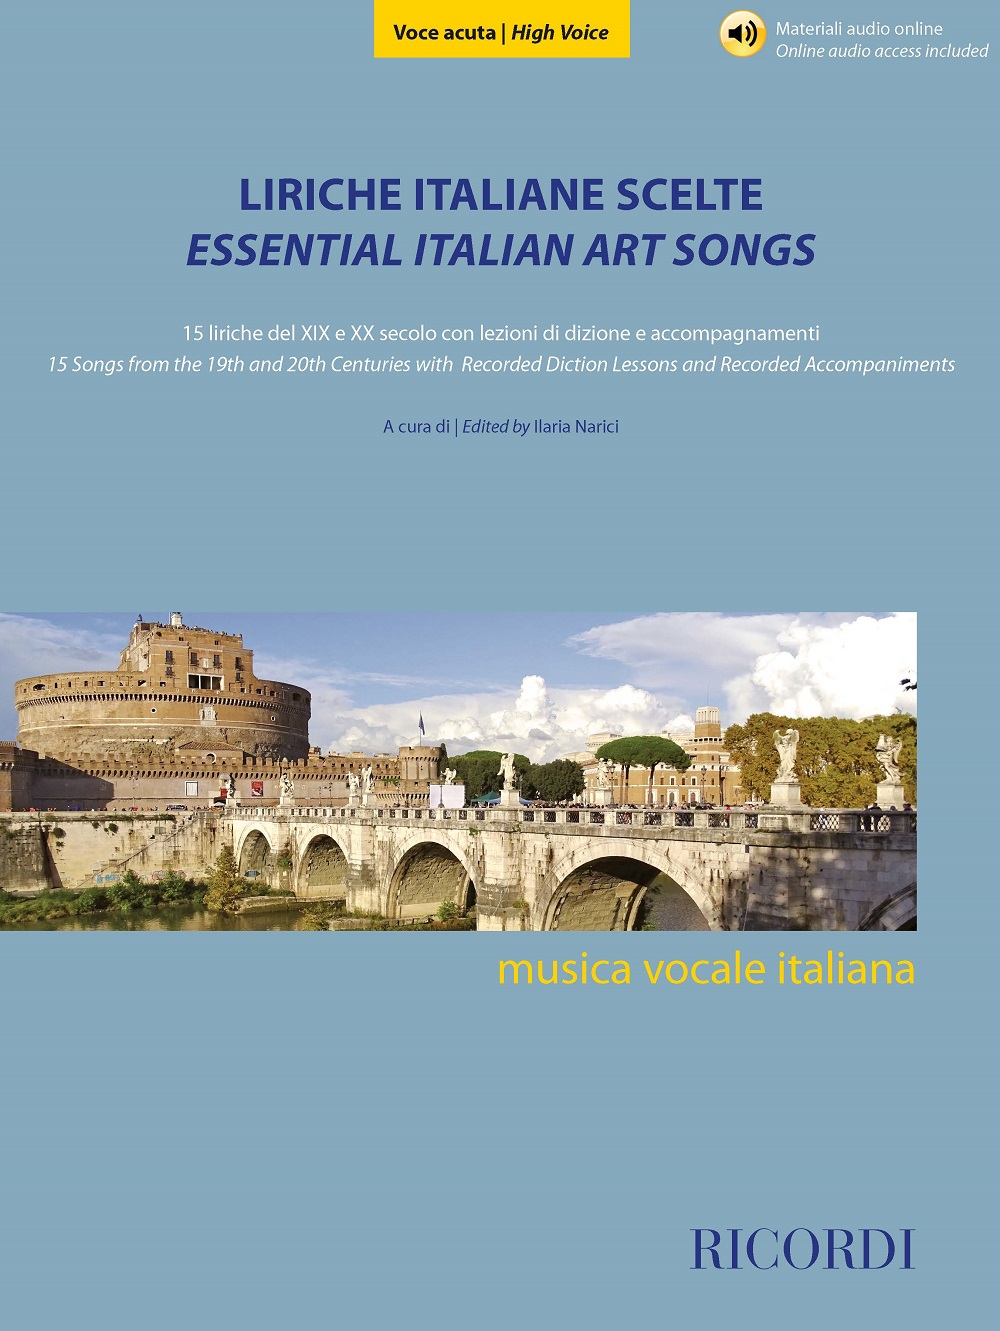 Liriche italiane scelte - Voce acuta: High Voice: Vocal Album